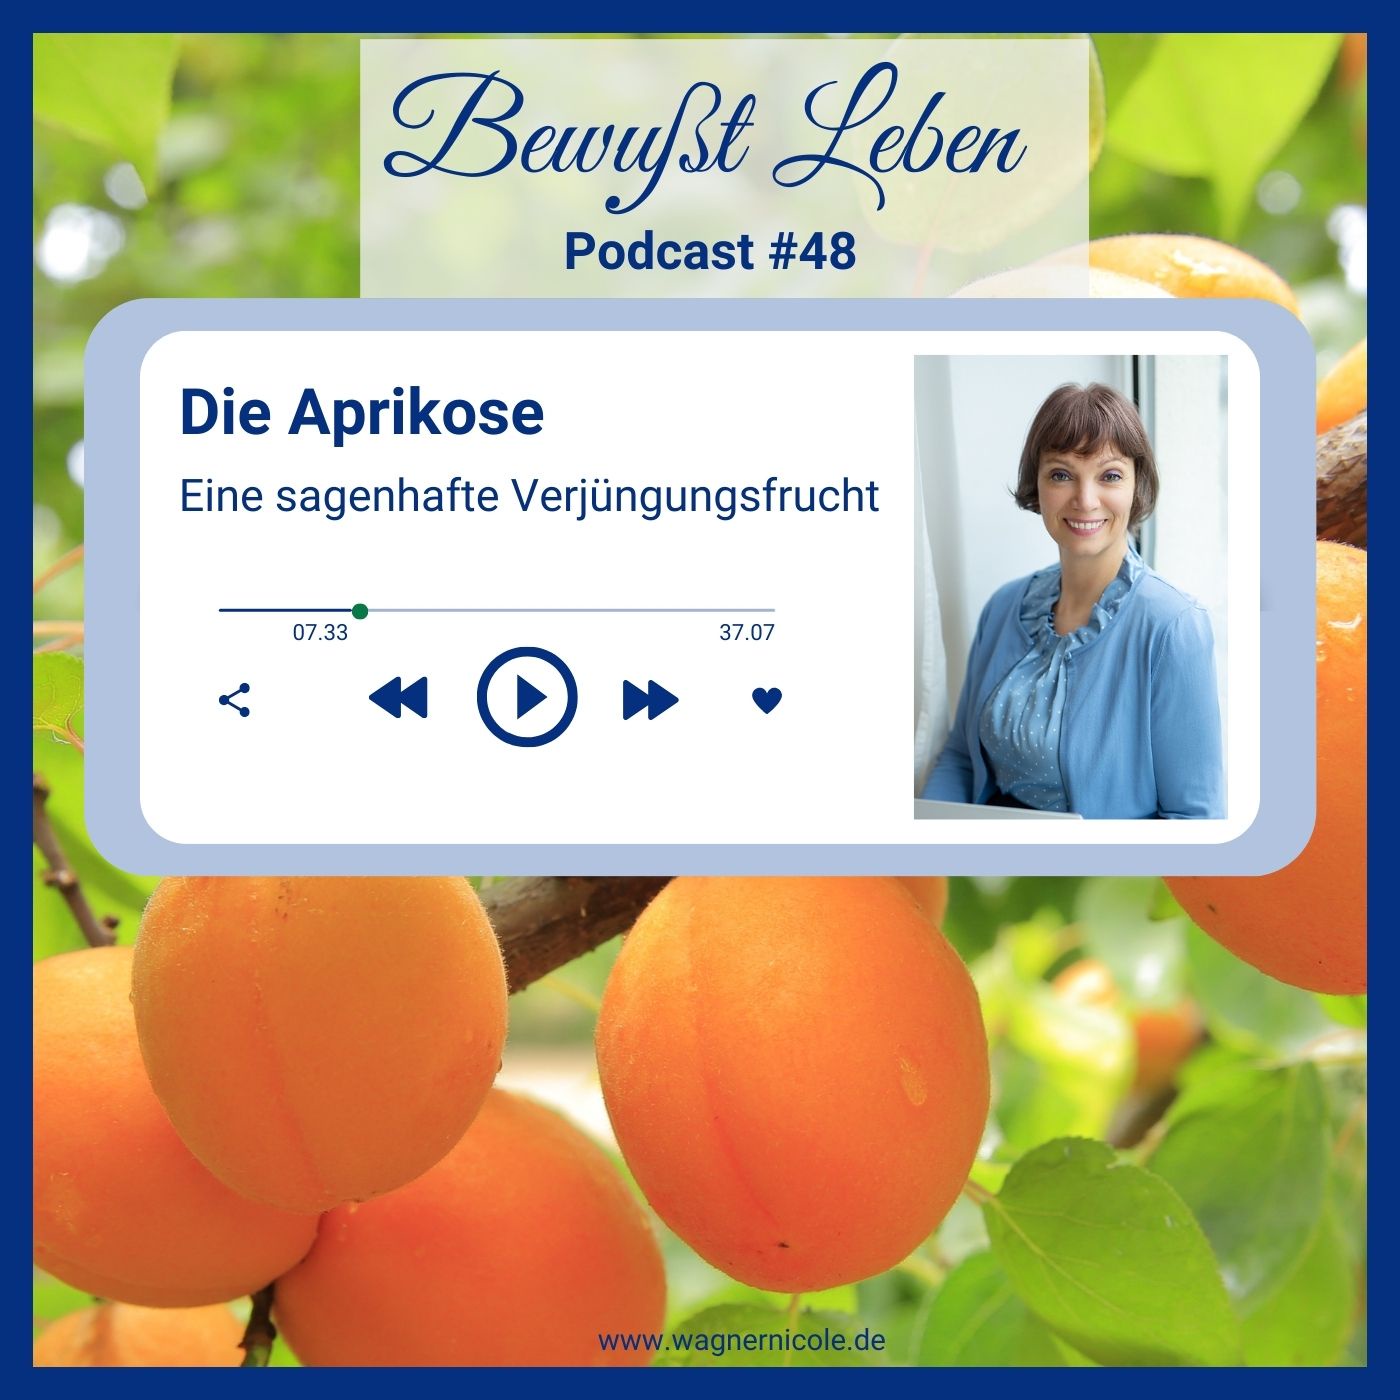 Die Aprikose I Eine sagenhafte Verjüngungsfrucht I Podcast #48